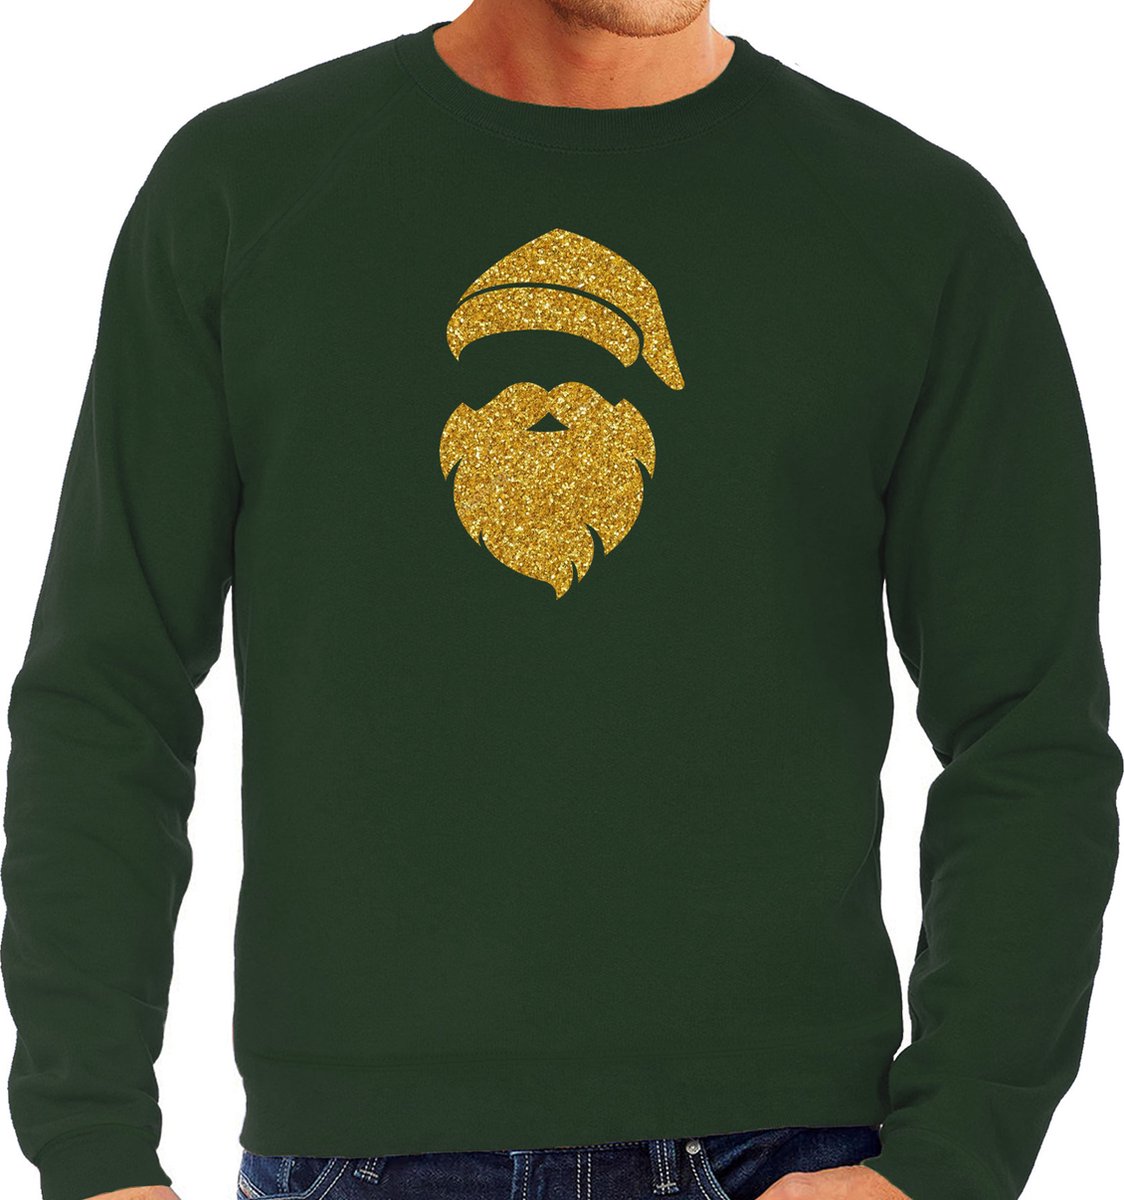 Kerstman hoofd Kerst trui - groen met gouden glitter bedrukking - heren - Kerst sweaters / Kerst outfit XXL